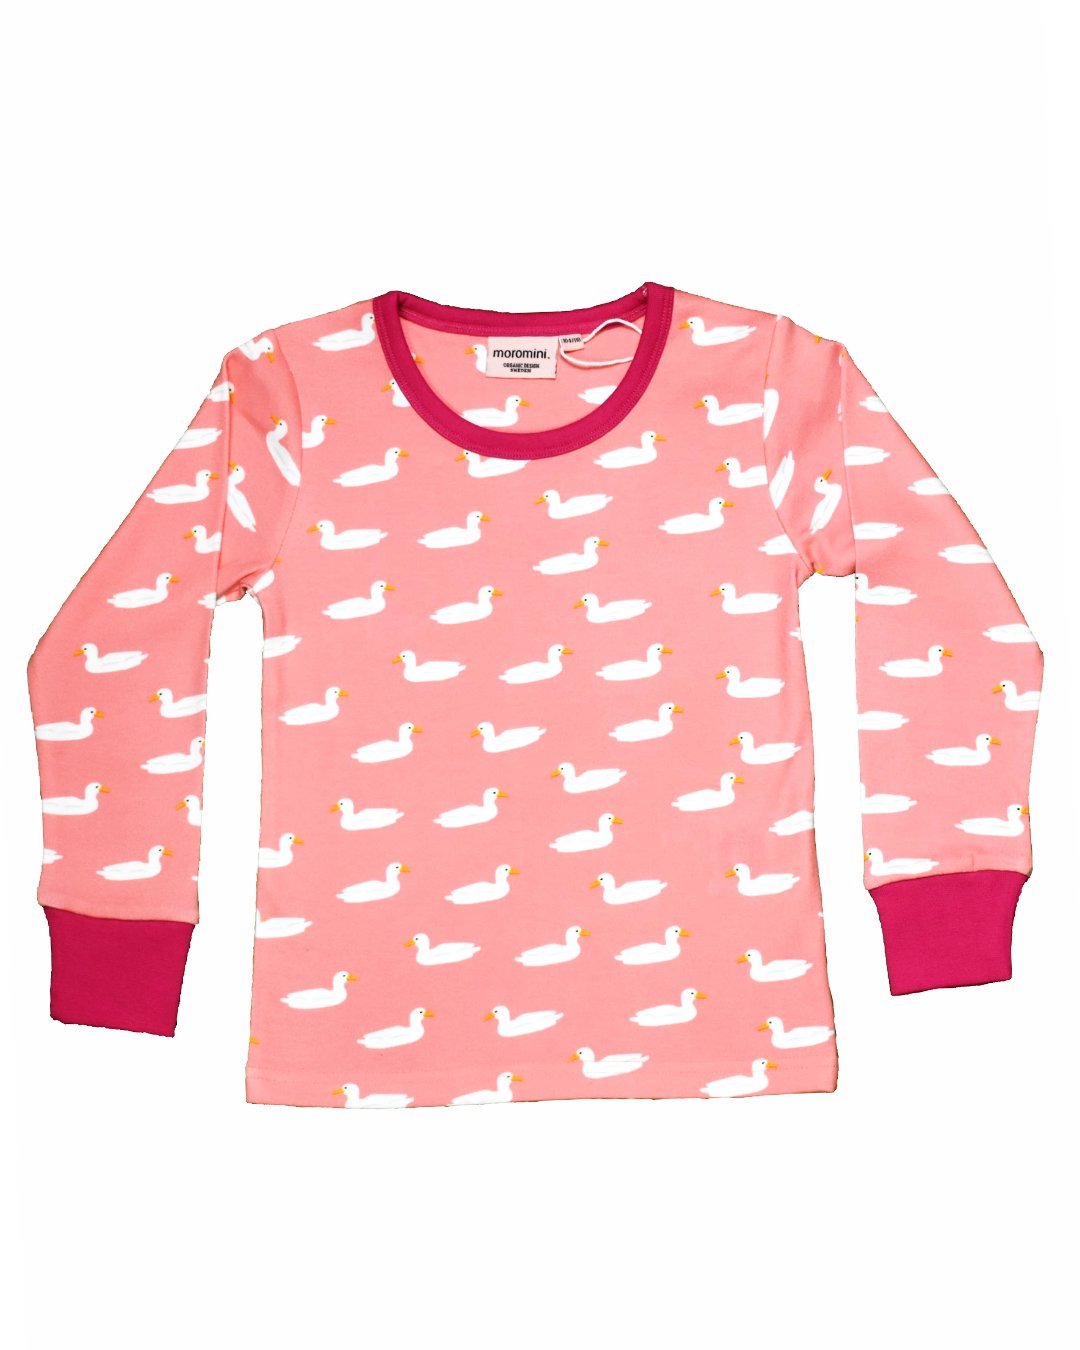 Rosa Shirt für Kinder mit weißen Enten aus Biobaumwolle von moromini